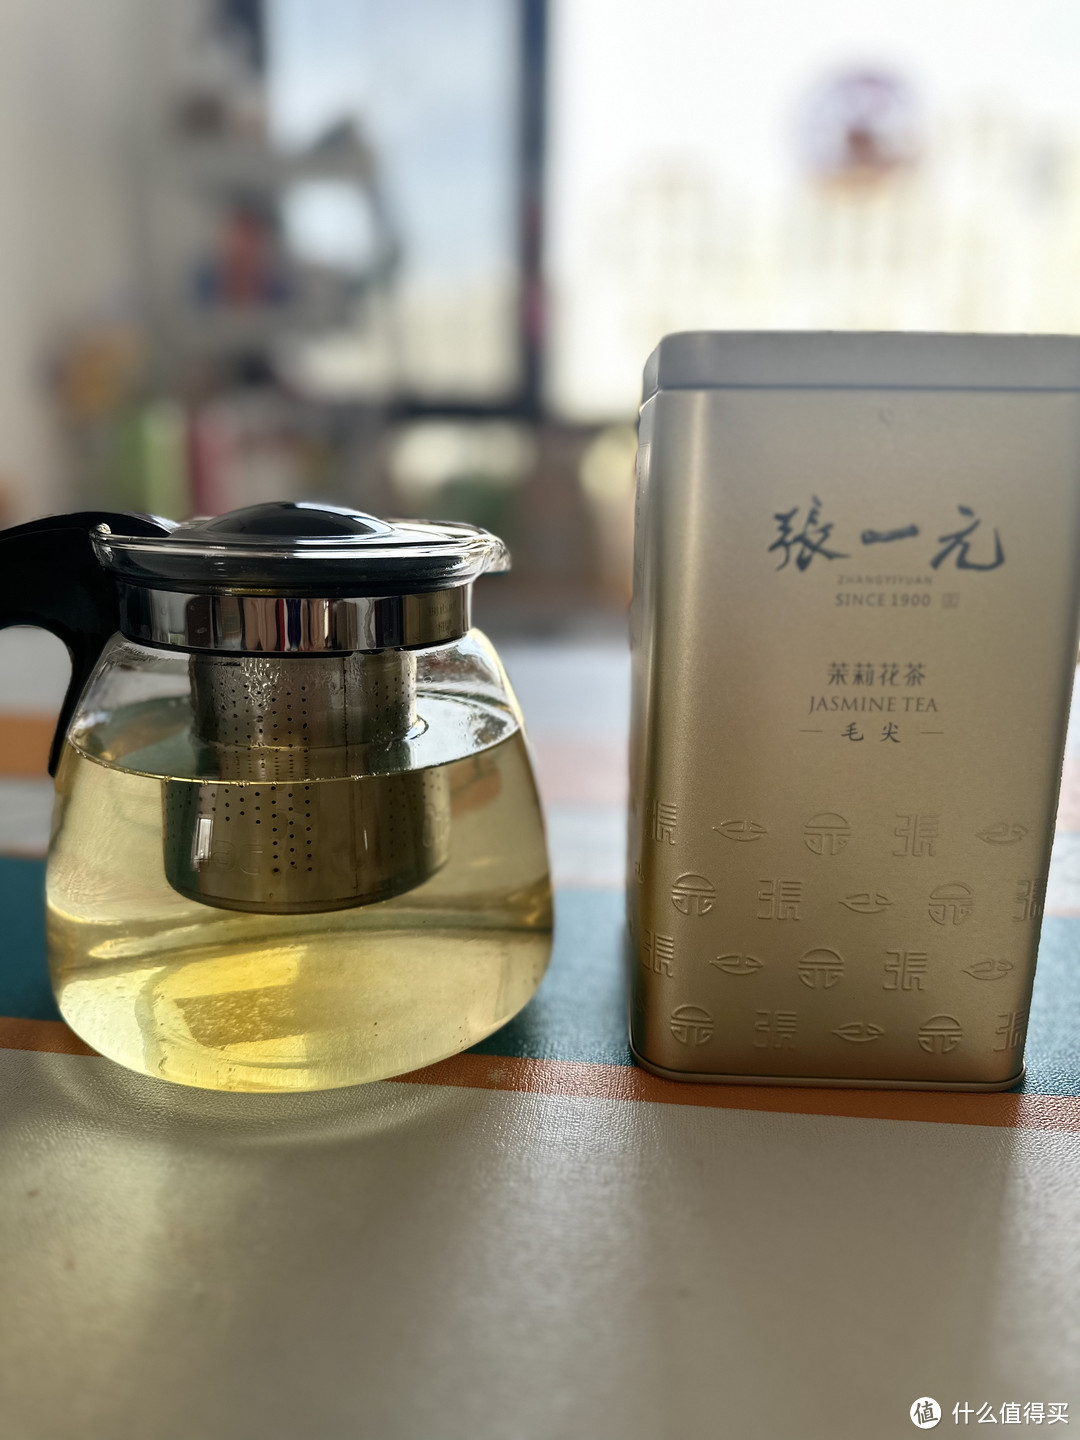 一杯中国茶，品味岁月经典，感受老张家的精湛工艺!